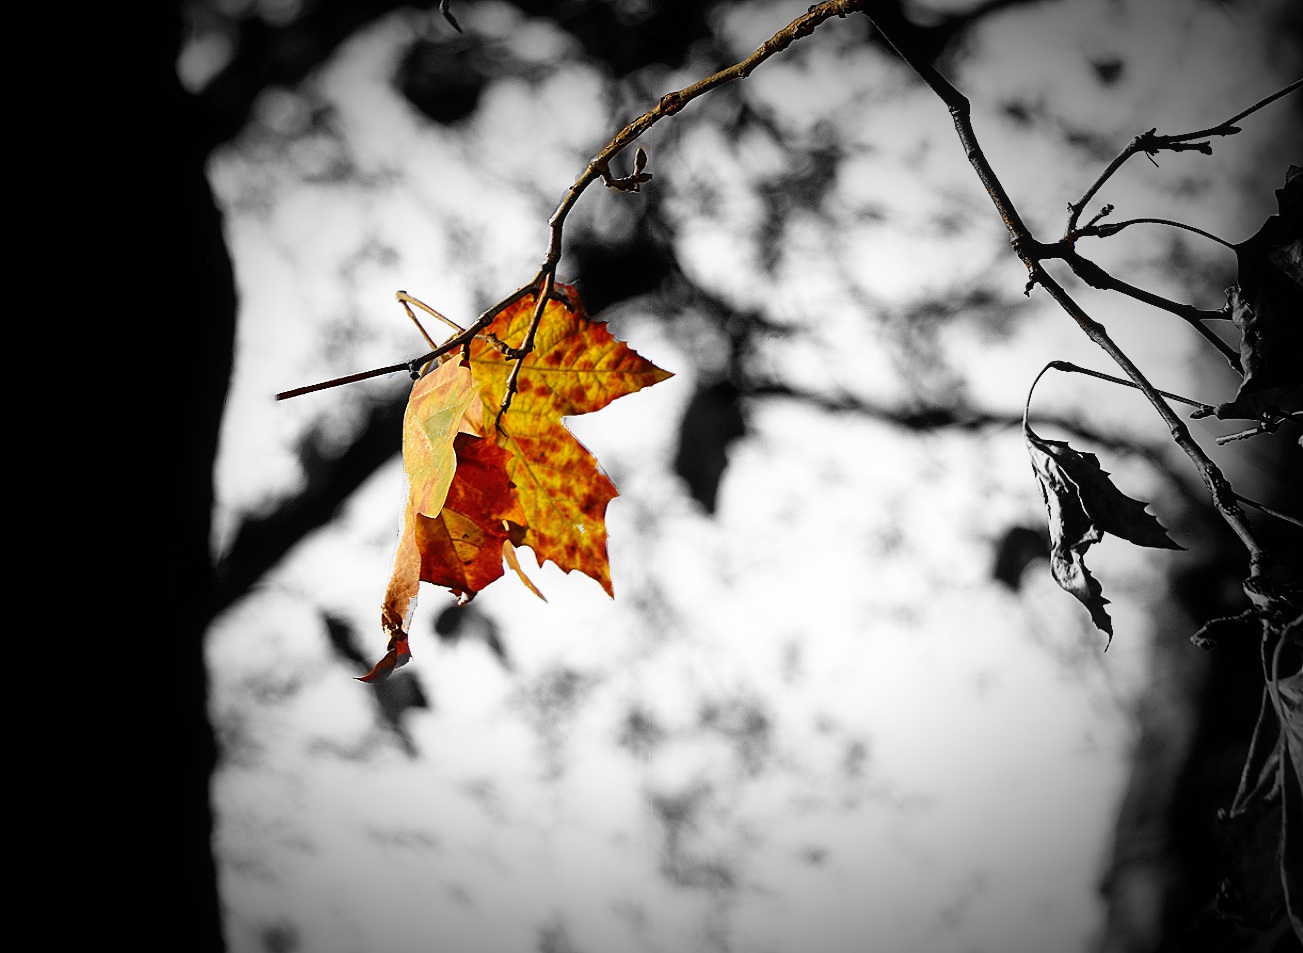 The last spot of autumn